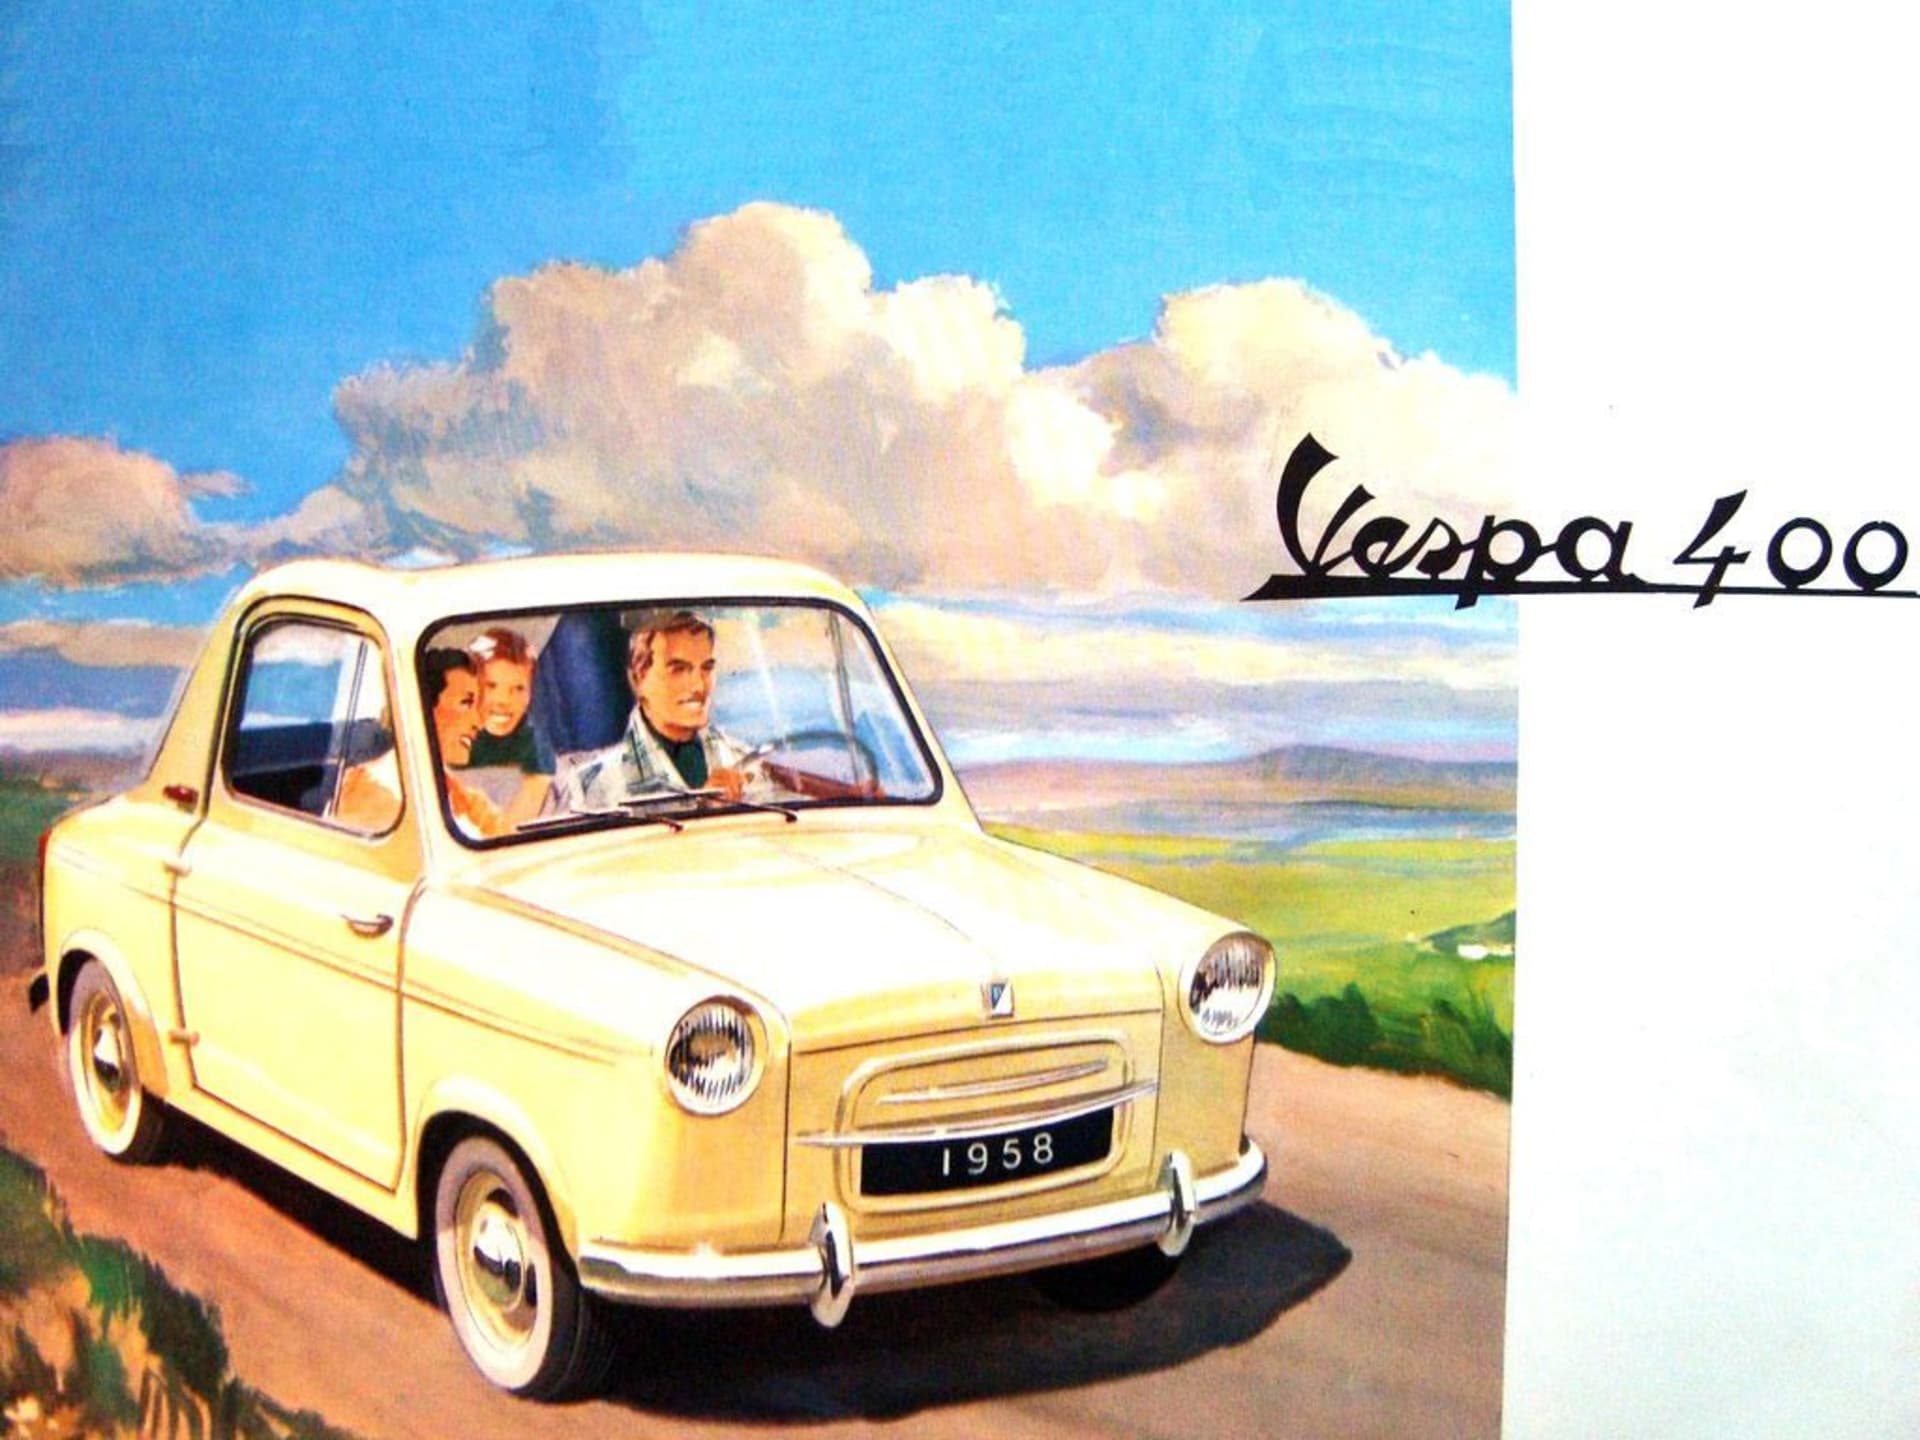 Vespa 400 byl malý automobil. Vyráběl se jen čtyři roky a nebyl příliš úspěšný.